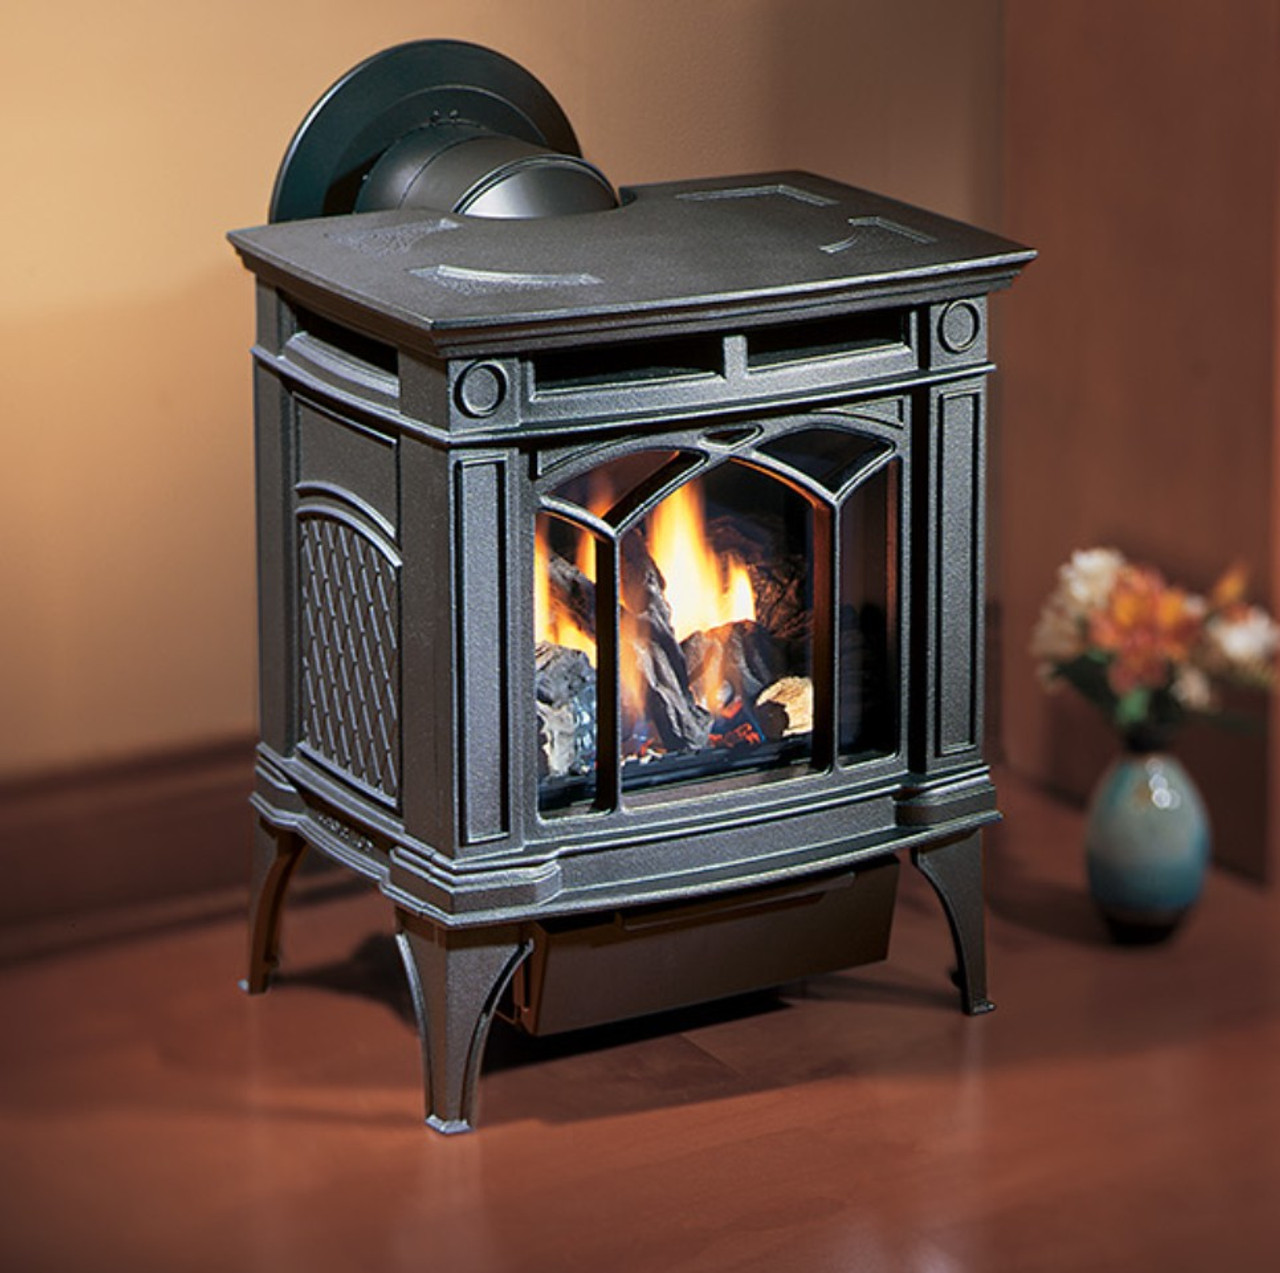 regency-h15-gas-stove-rocky-mountain-stove-fireplace